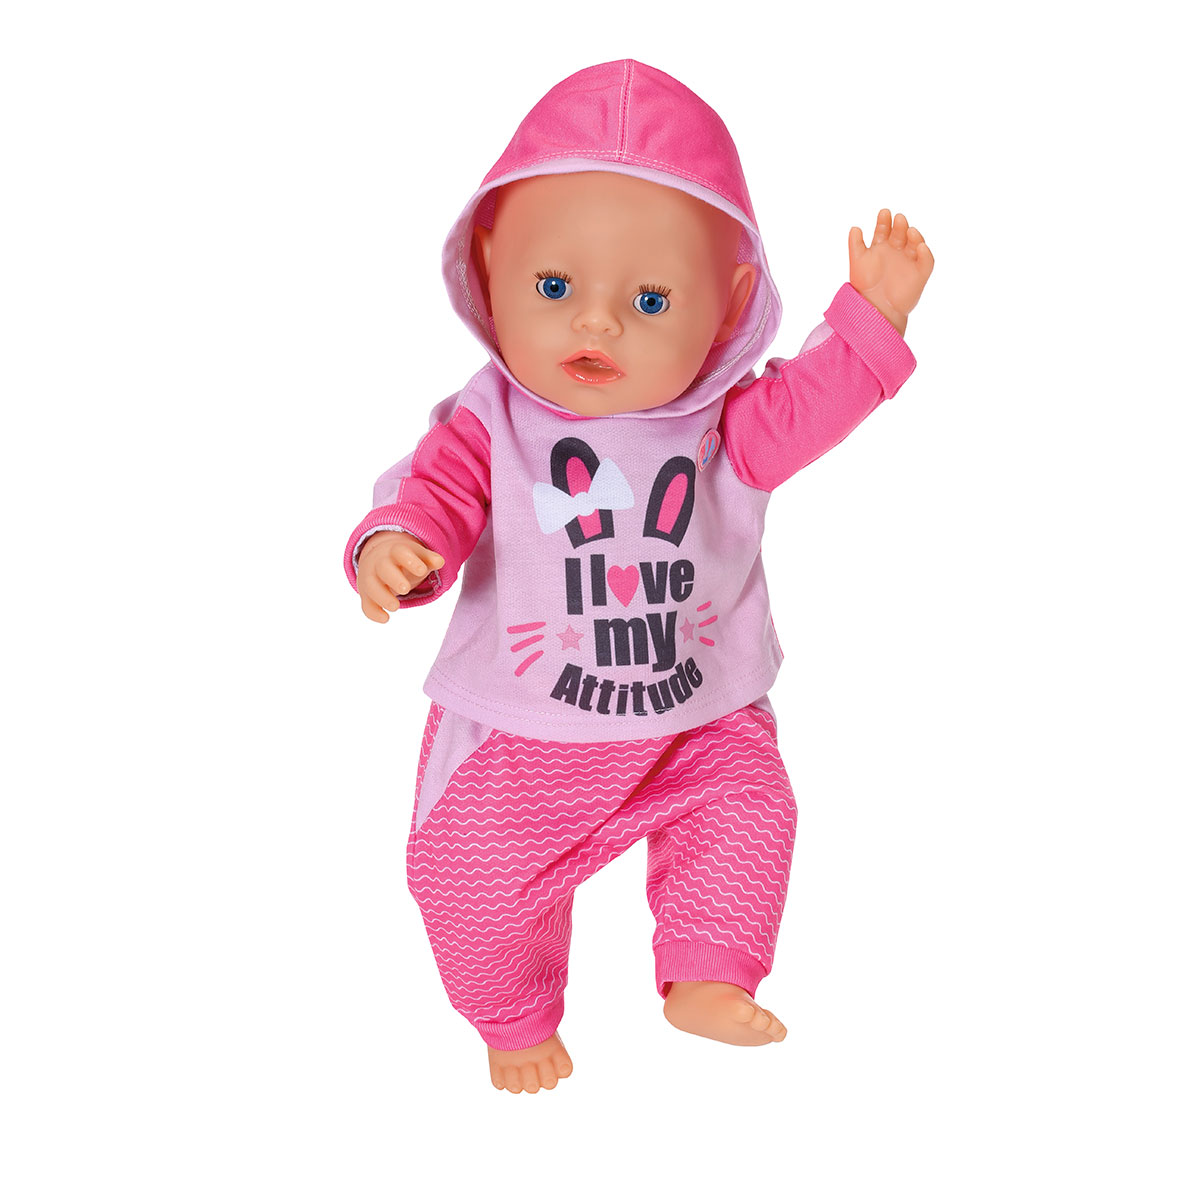 Набор одежды для куклы BABY born Спортивный костюм для бега (43 cm, розовый) (830109-1)